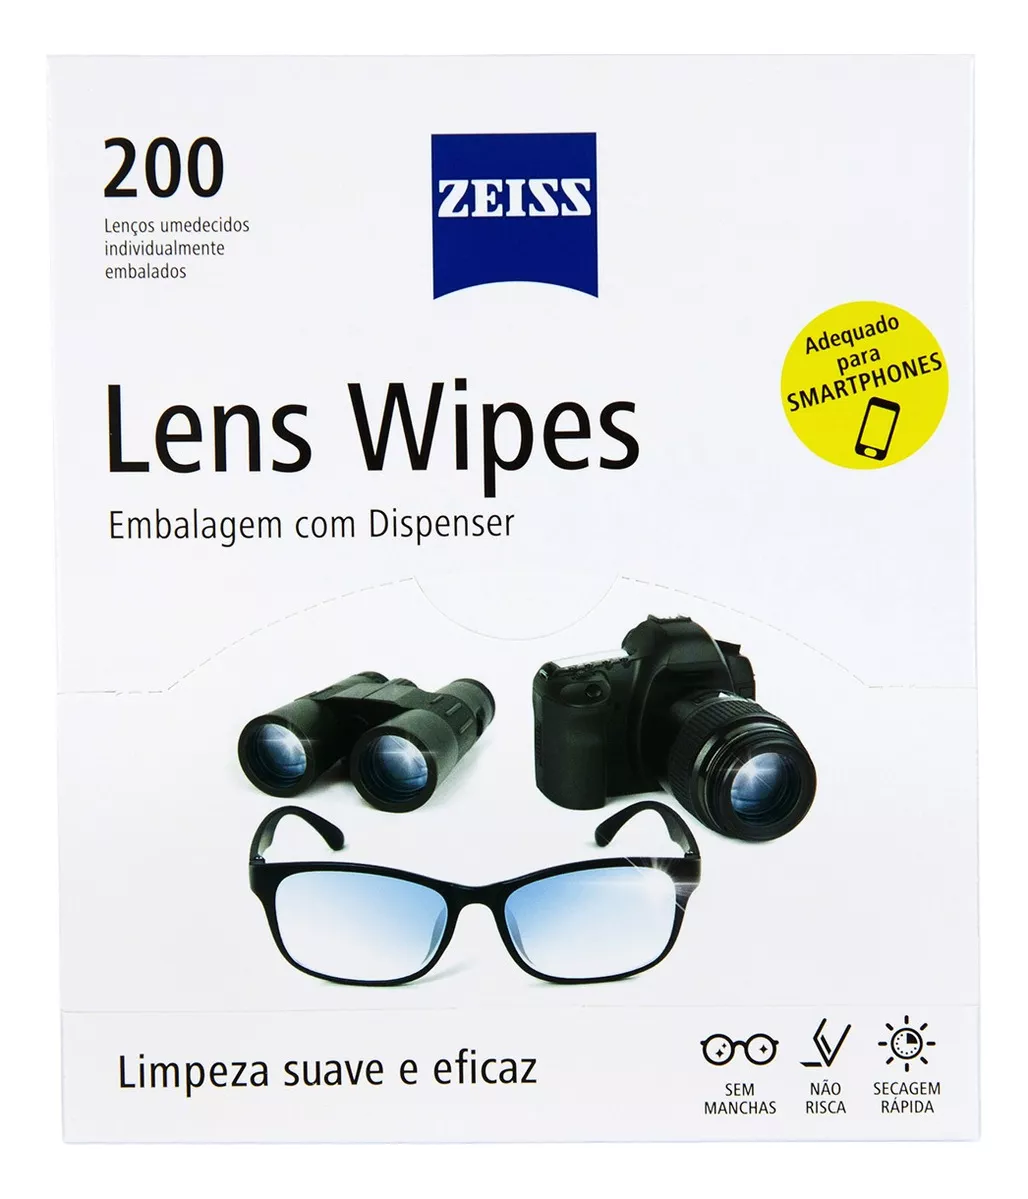 Segunda imagem para pesquisa de lens wipes